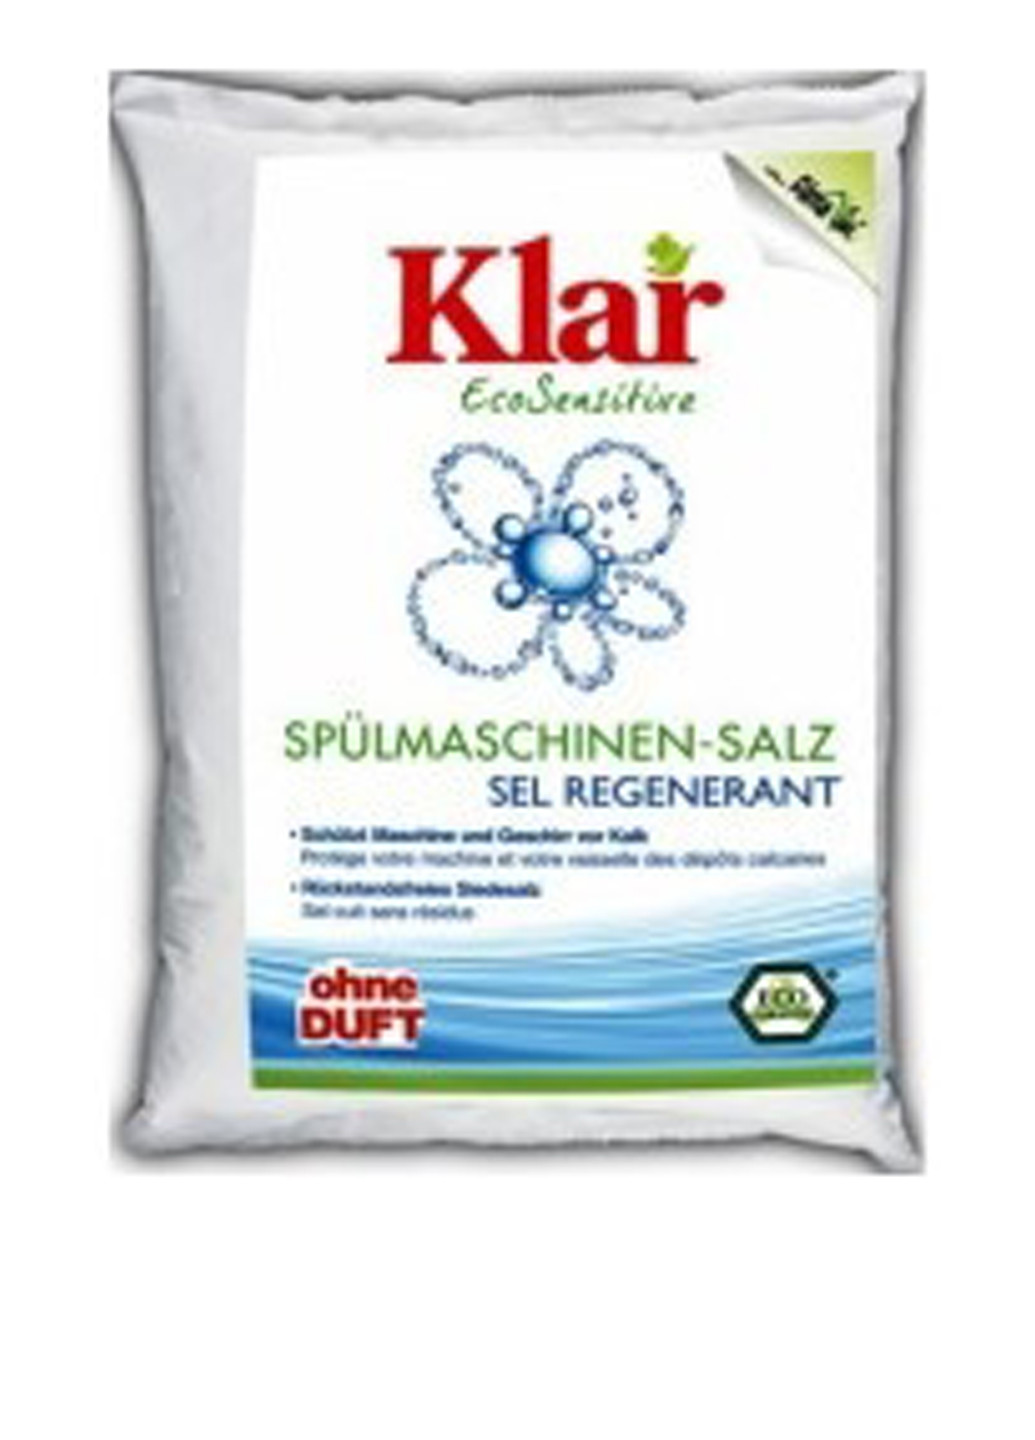 Соль для посудомоечных машин, 2 кг Klar (138200344)